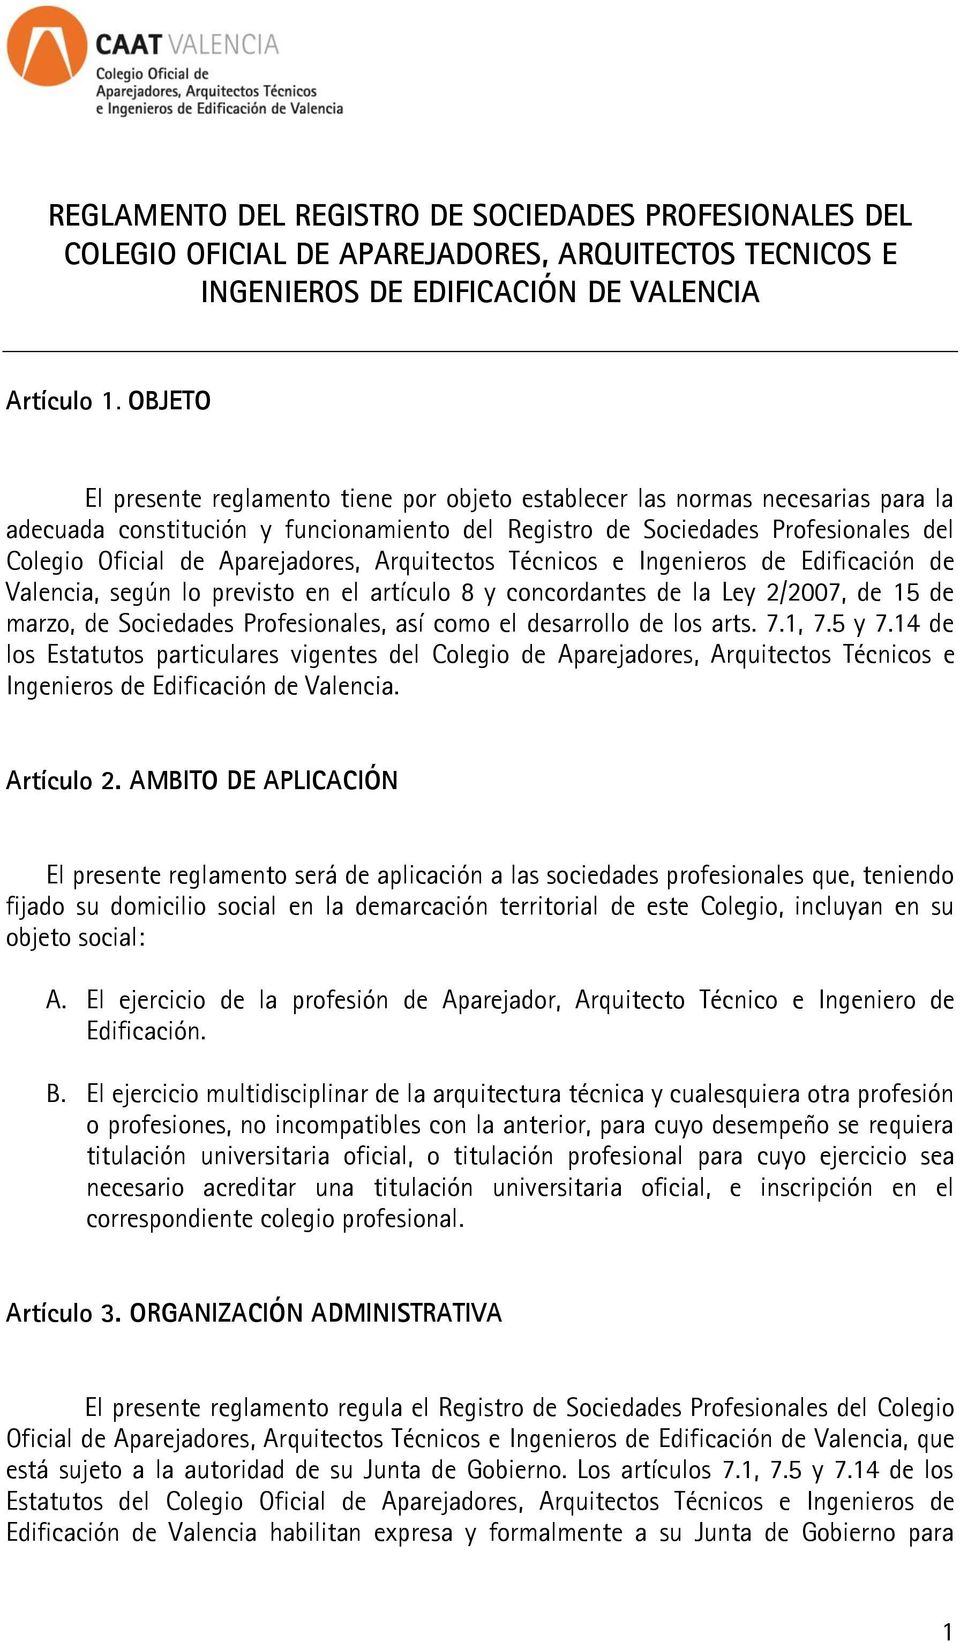 Aparejadores, Arquitectos Técnicos e Ingenieros de Edificación de Valencia, según lo previsto en el artículo 8 y concordantes de la Ley 2/2007, de 15 de marzo, de Sociedades Profesionales, así como